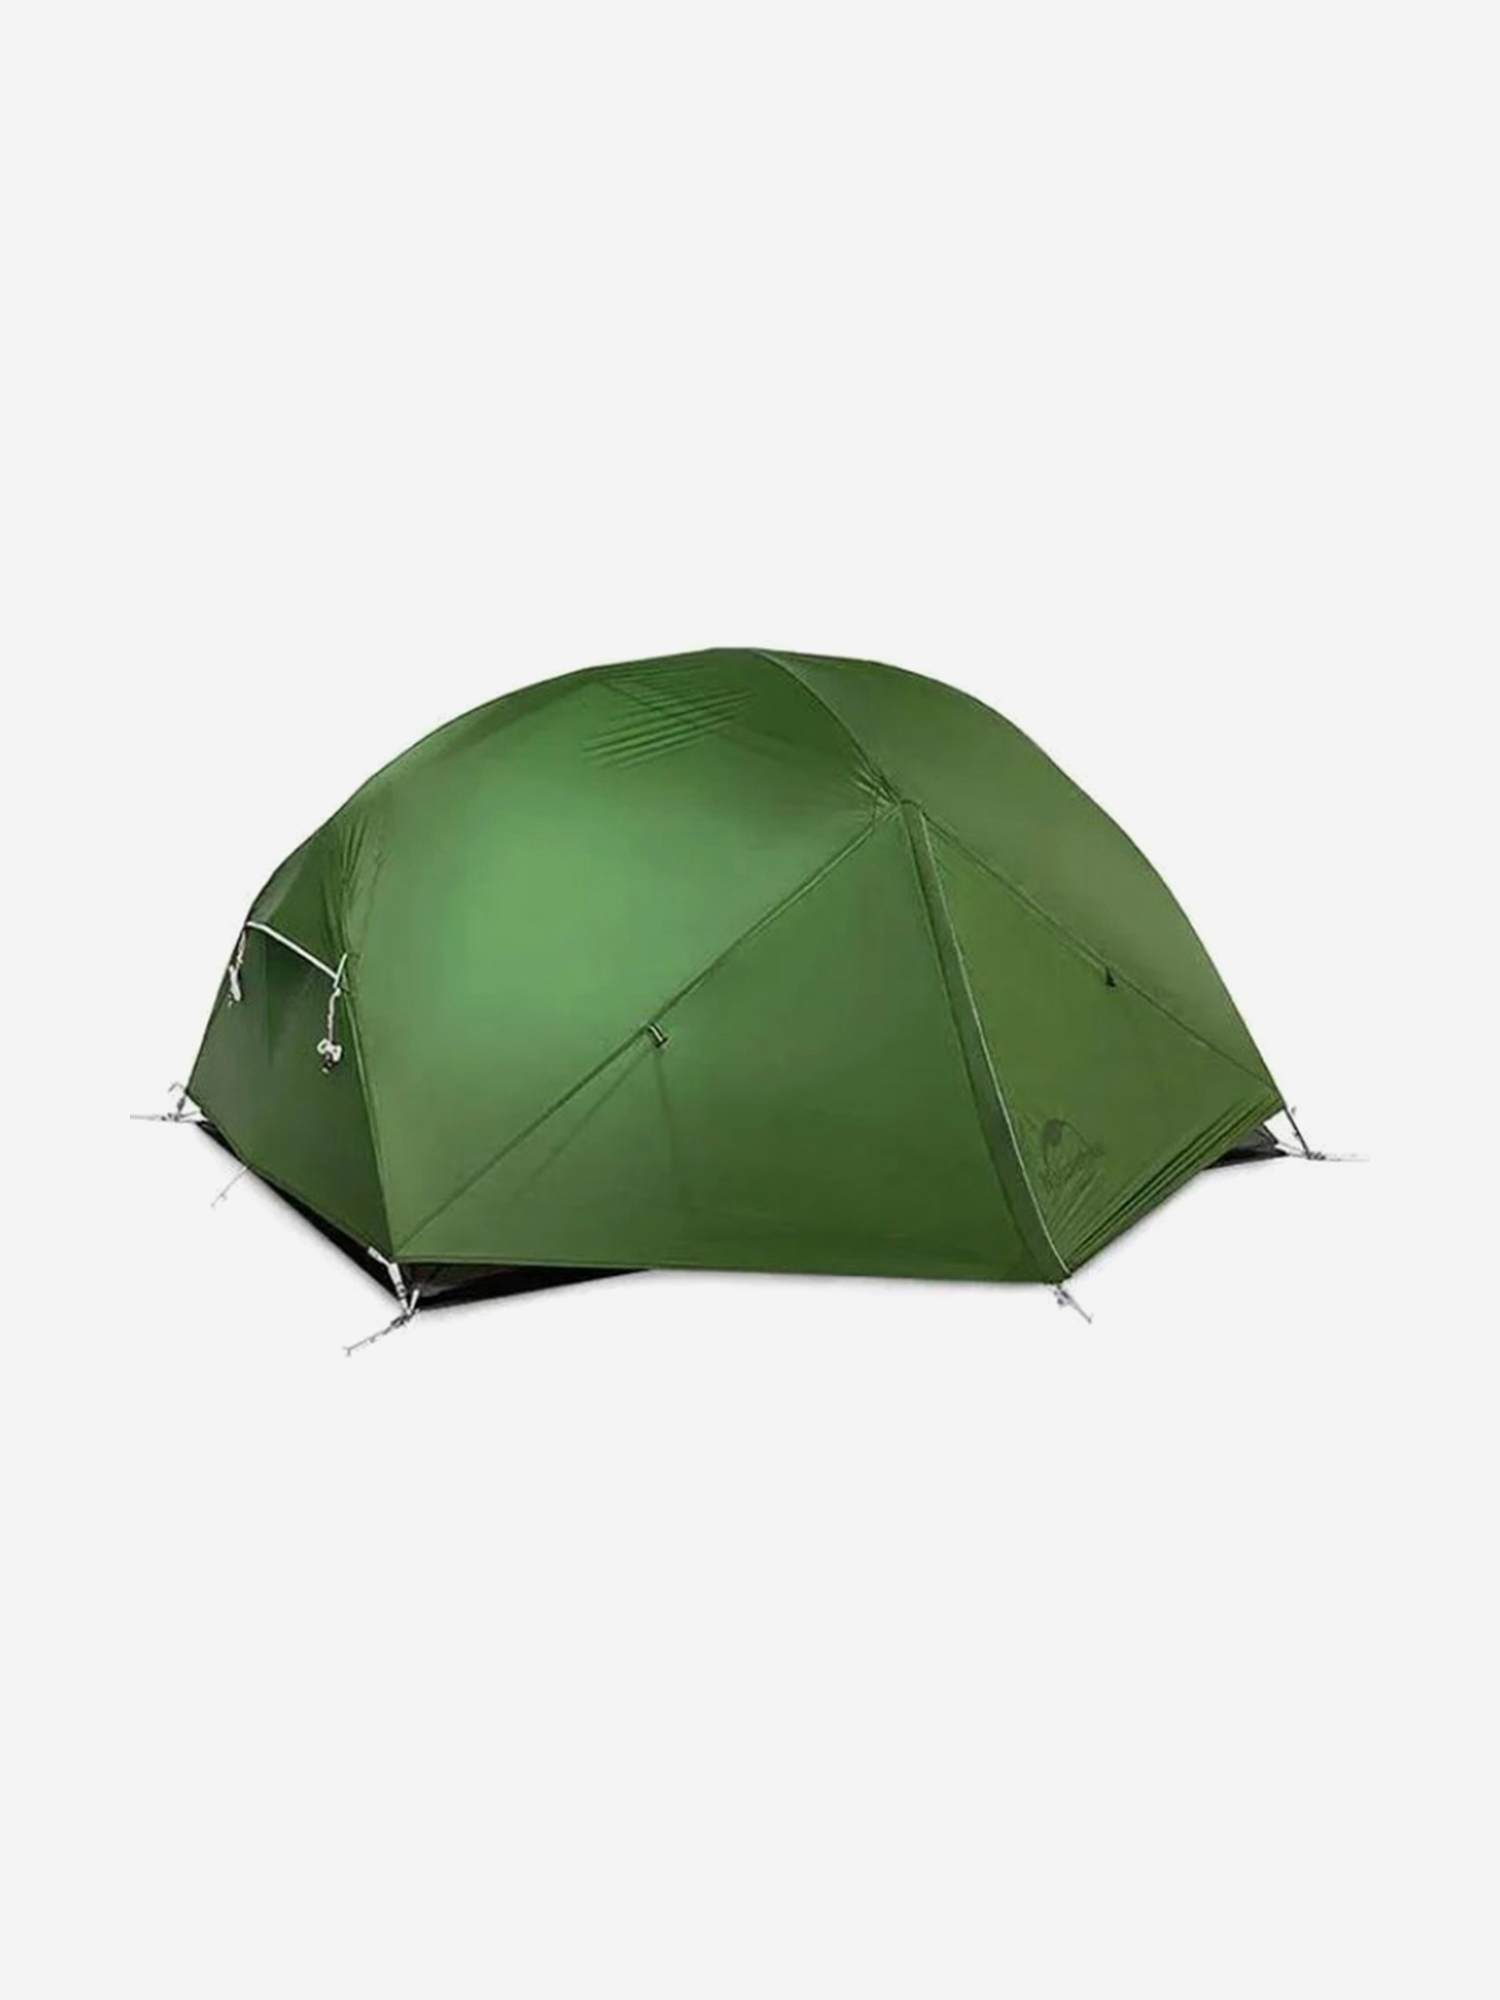 Палатка Naturehike Mongar 2-местная, алюминиевый каркас, зеленая, Зеленый палатка naturehike opalus si 3 местная алюминиевый каркас зеленый зеленый